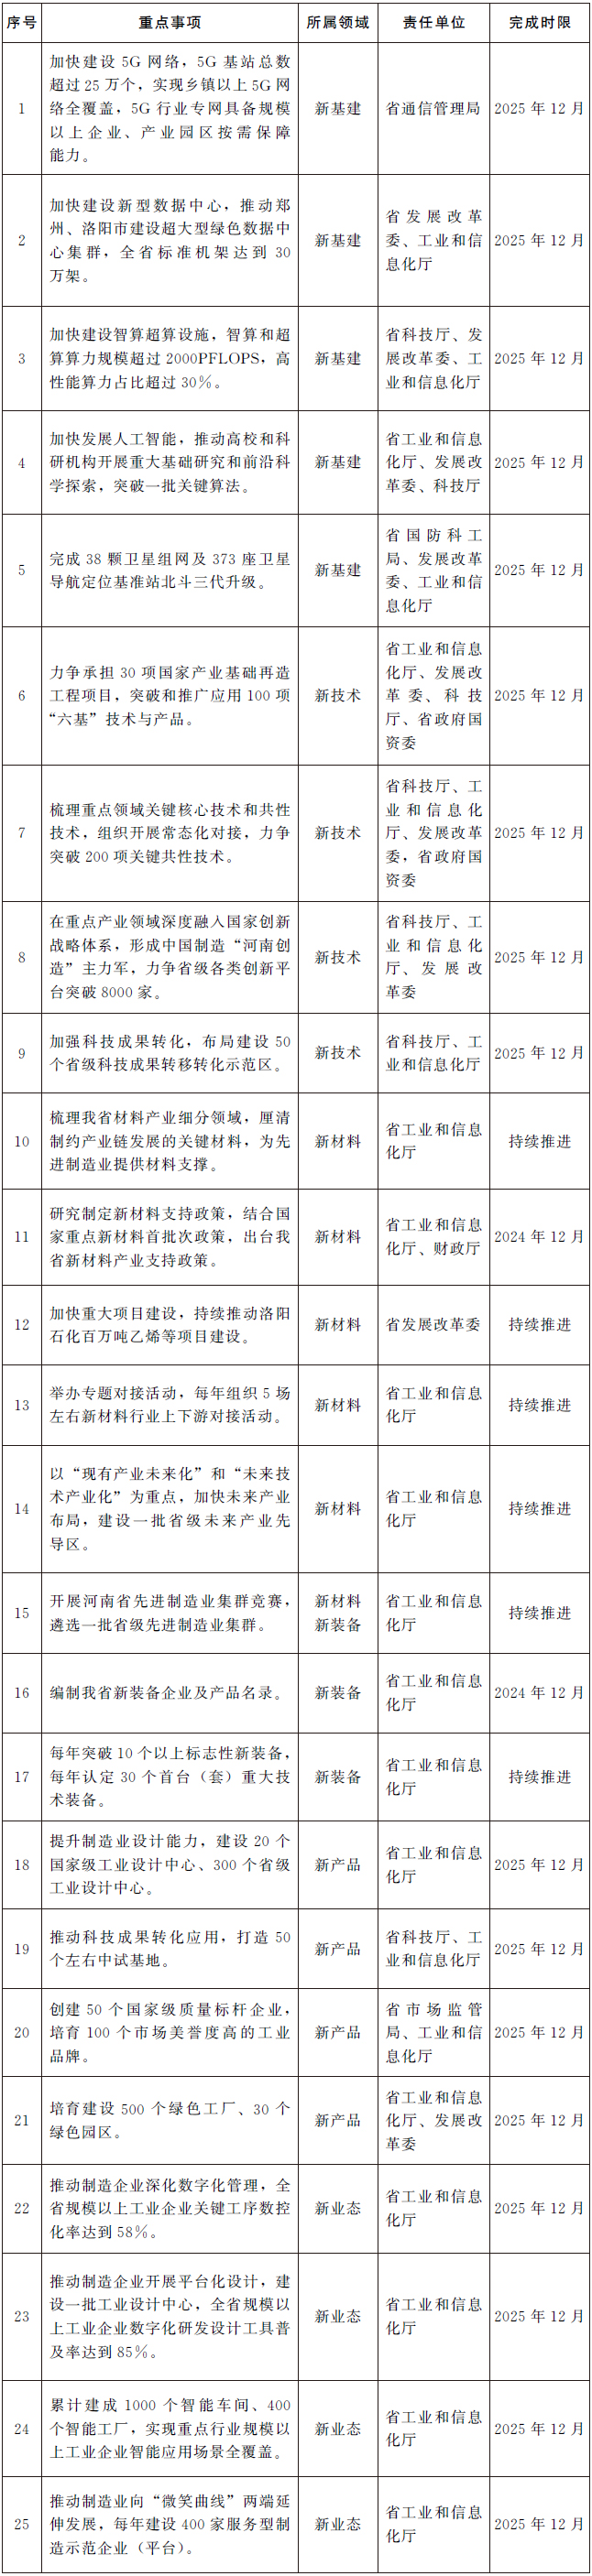 河南省人民政府办公厅关于印发河南省加快制造业“六新”突破实施方案的通知